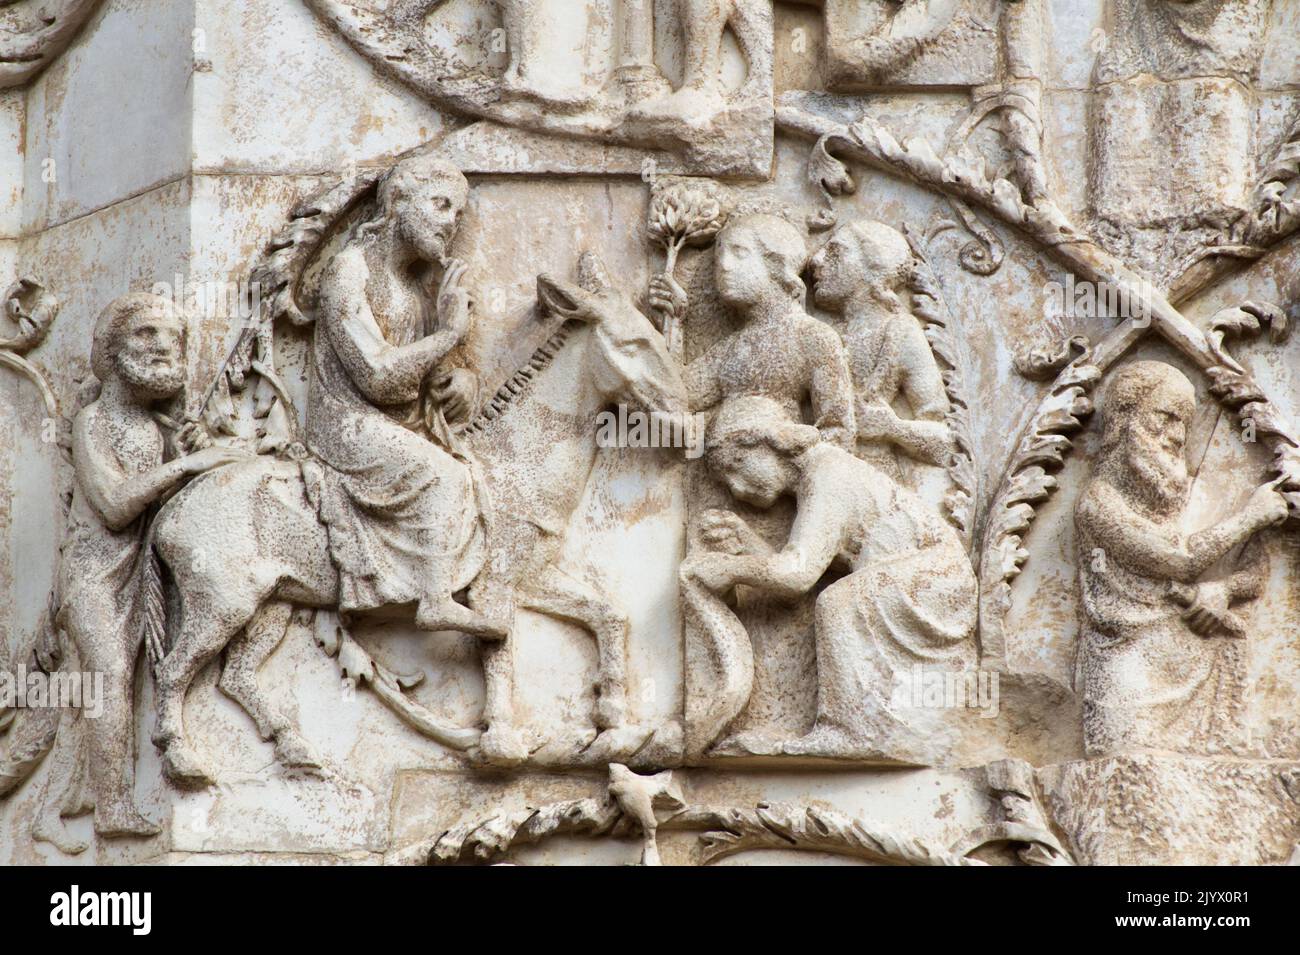 La strada di Gesù alla sua morte: L'ingresso a Gerusalemme - bassorilievo dal 3th° pilastro (nuovo Testamento) - facciata della cattedrale di Orvieto - Umbria - Italia Foto Stock